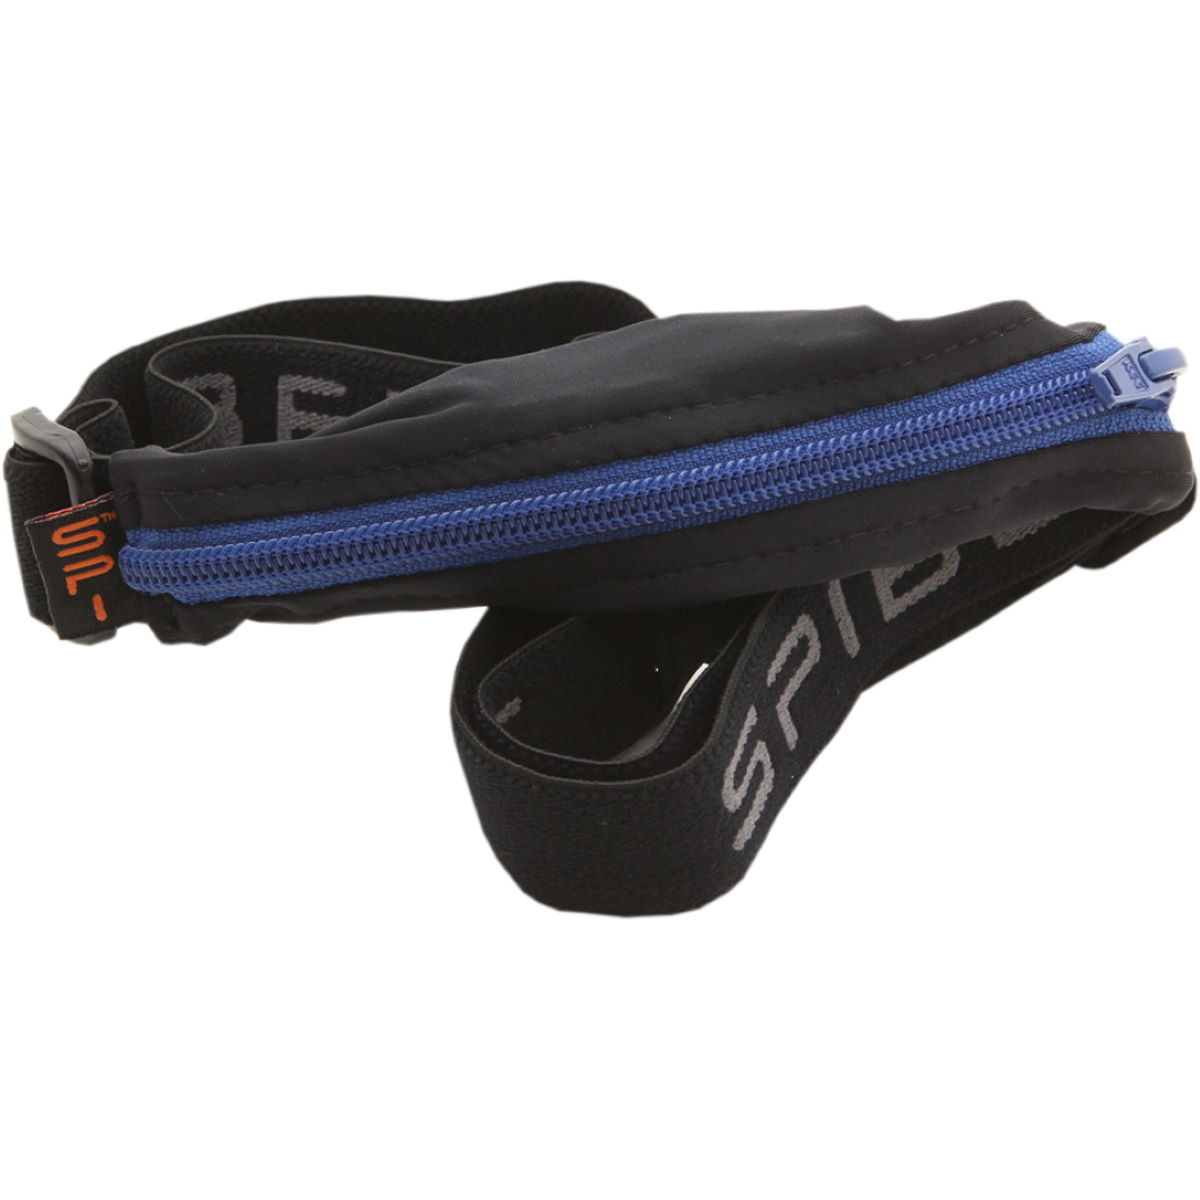 Cinturón de running SPIbelt (bolsillo grande de 22 cm) - Cinturones de running